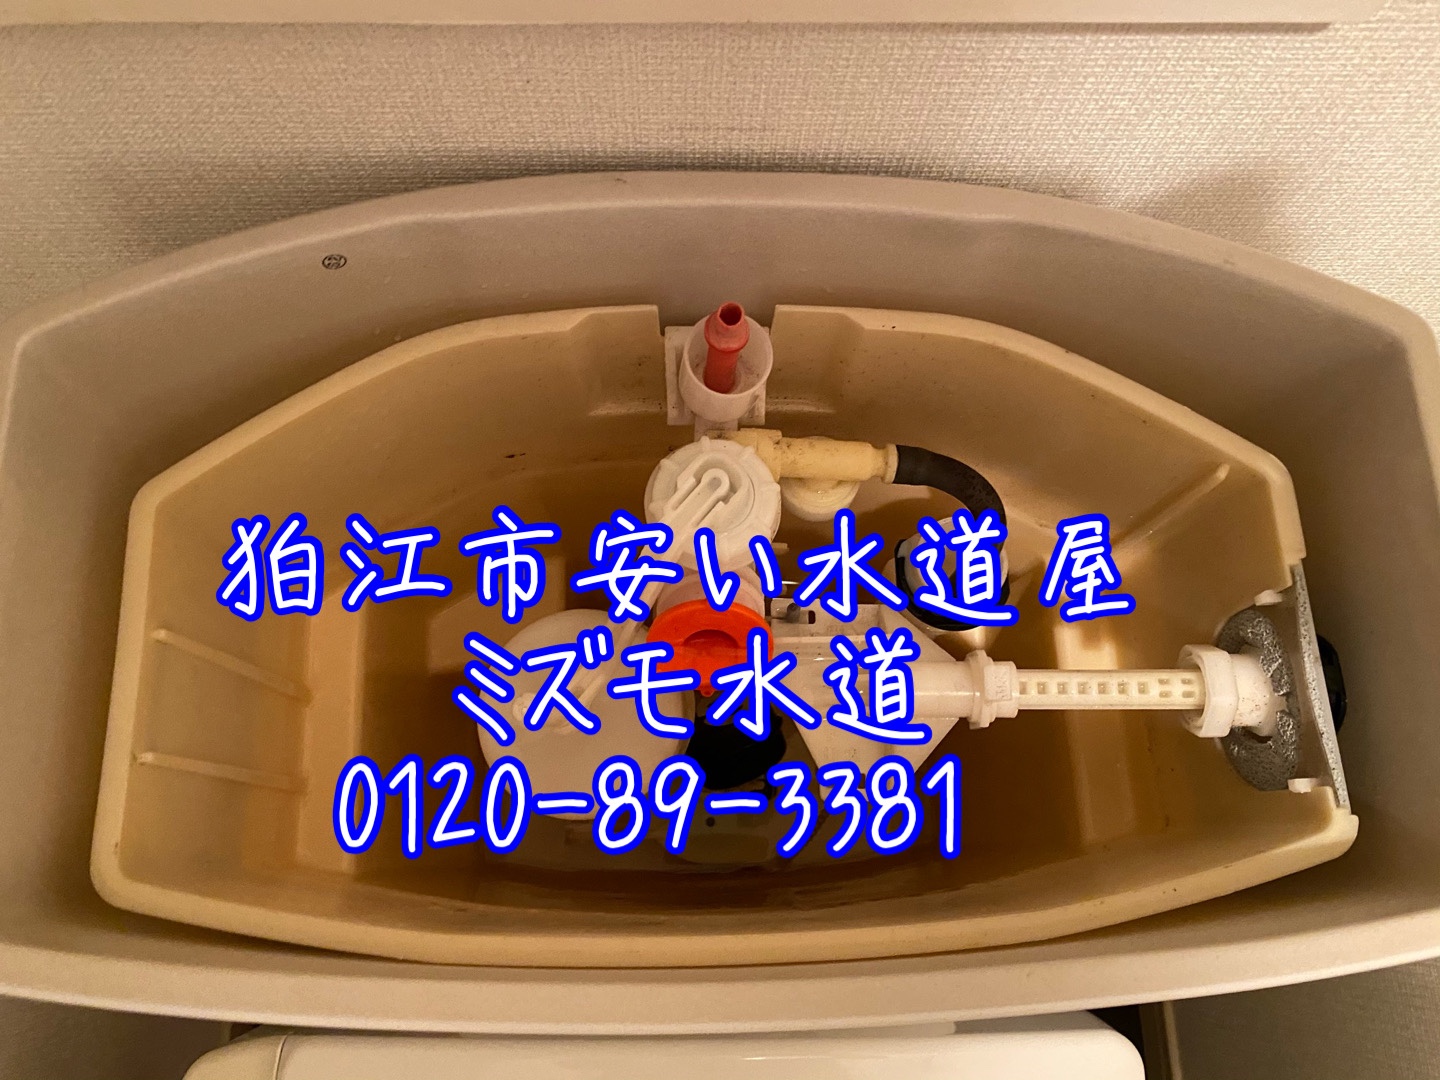 トイレタンク水漏れ部品交換狛江市
